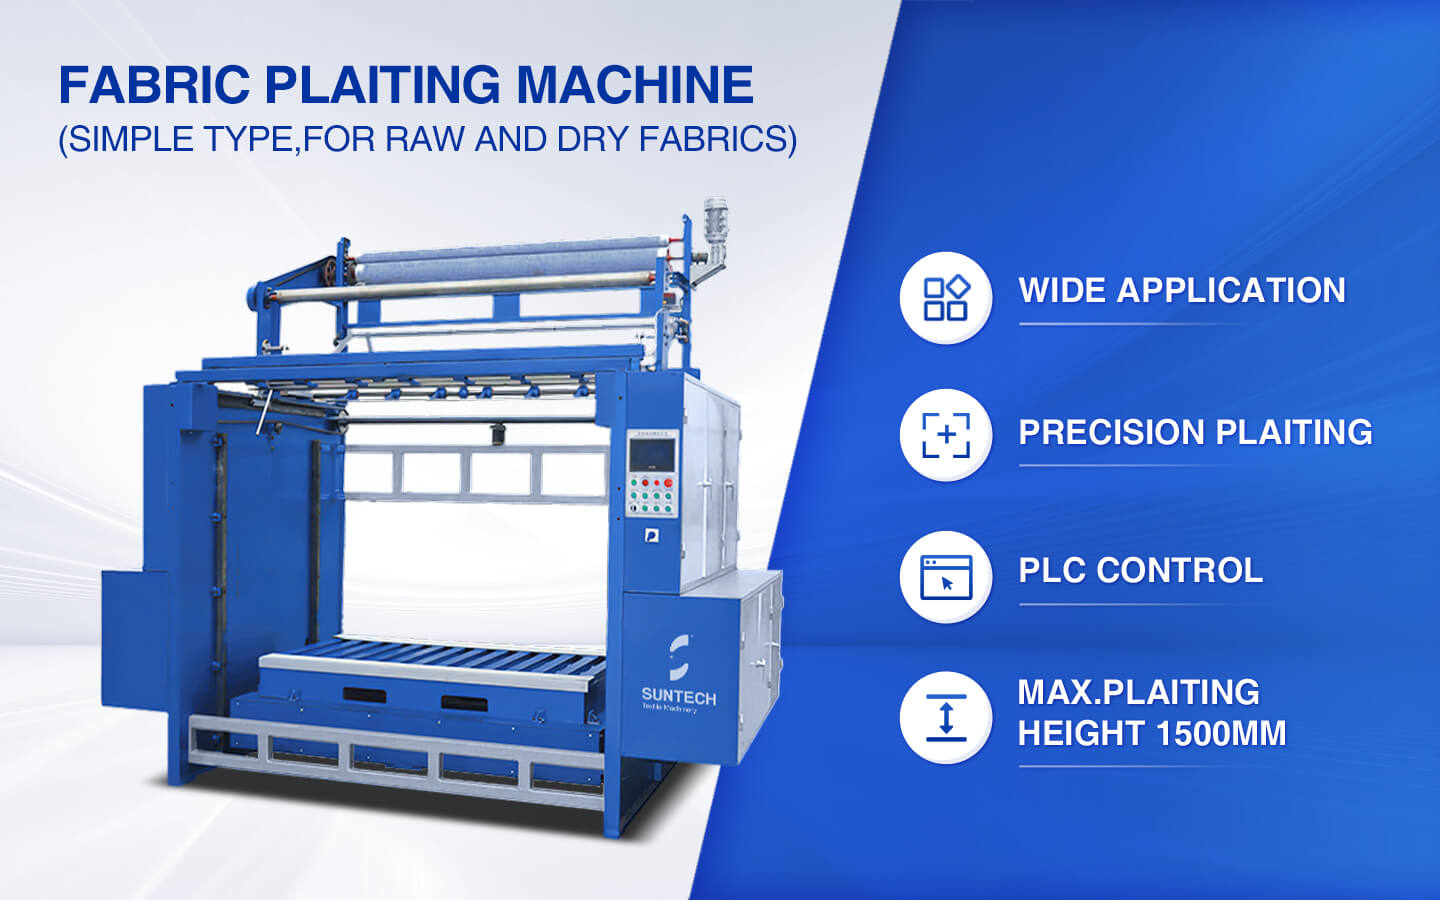 Fabric Plaiting Machine features